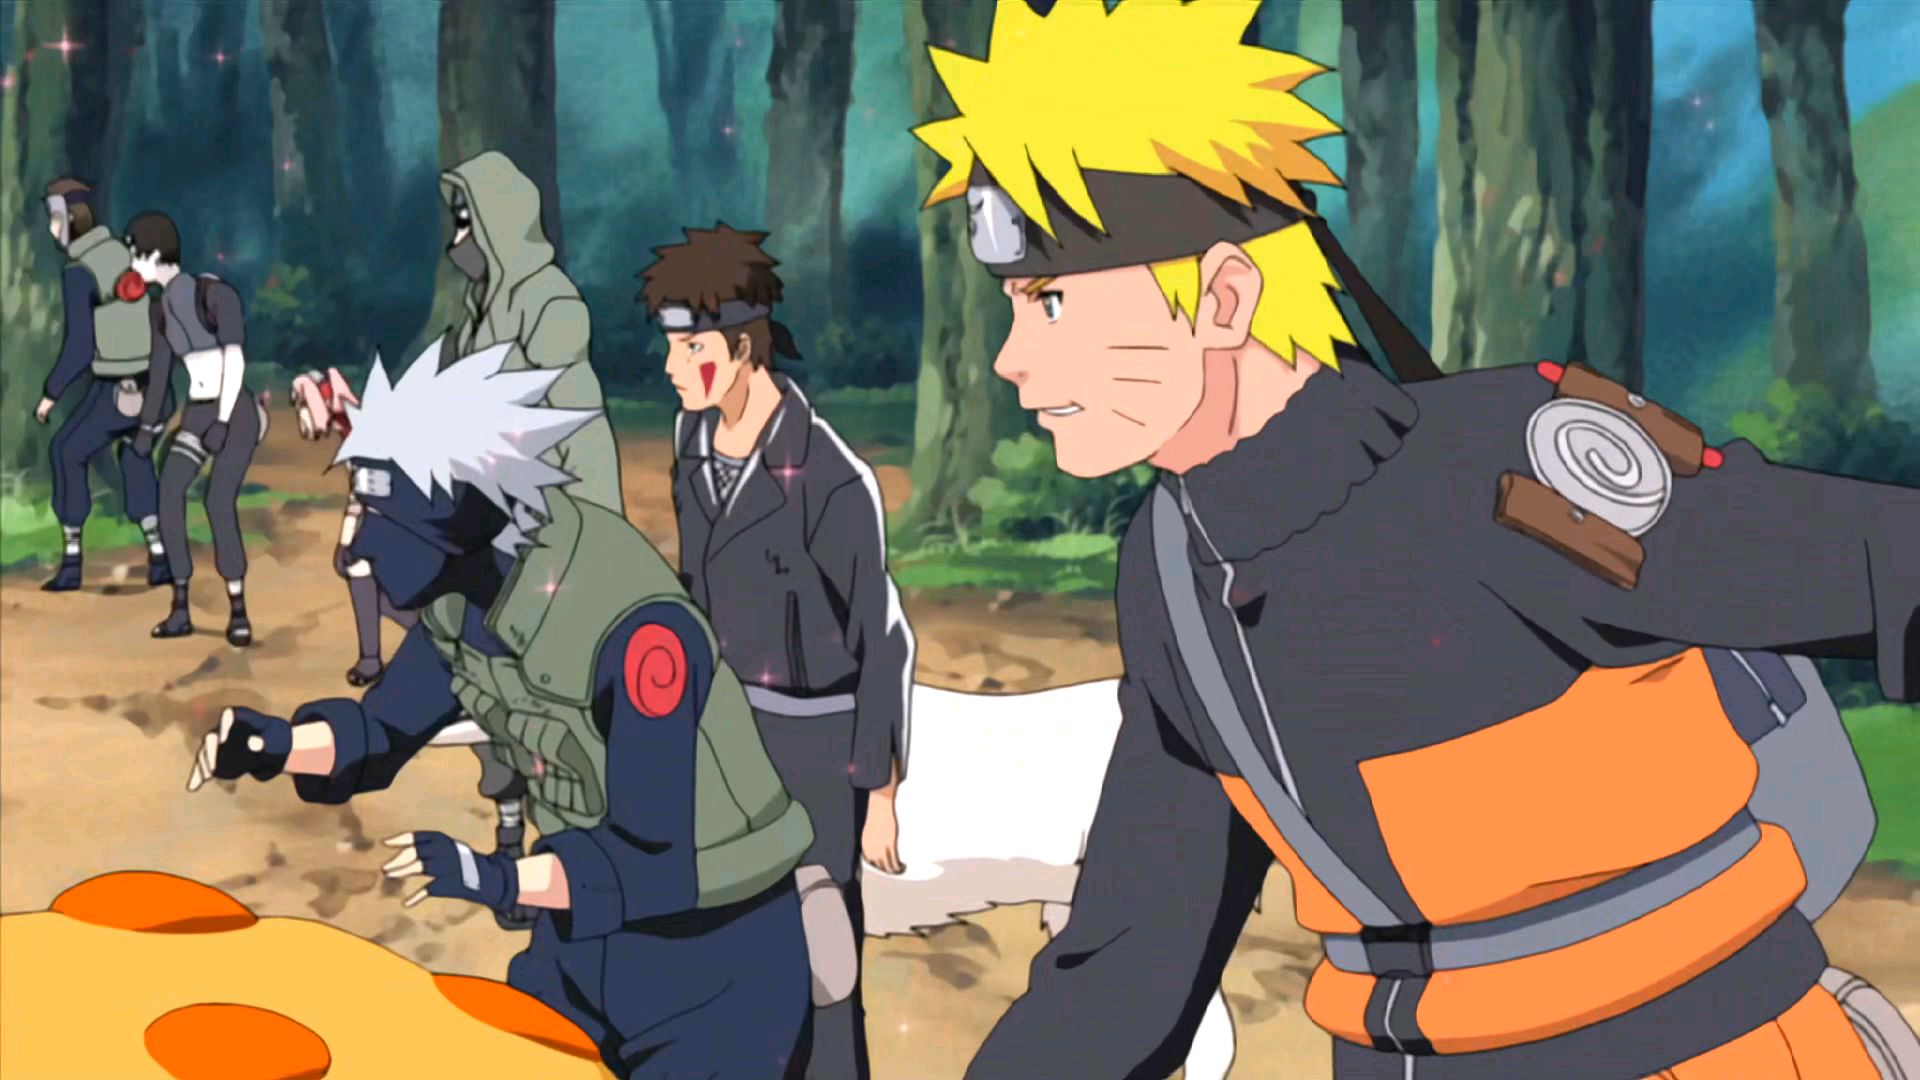 Naruto Shippuden episode 98 part 2 #narutoshipuddenn #kekeigenkai #kab